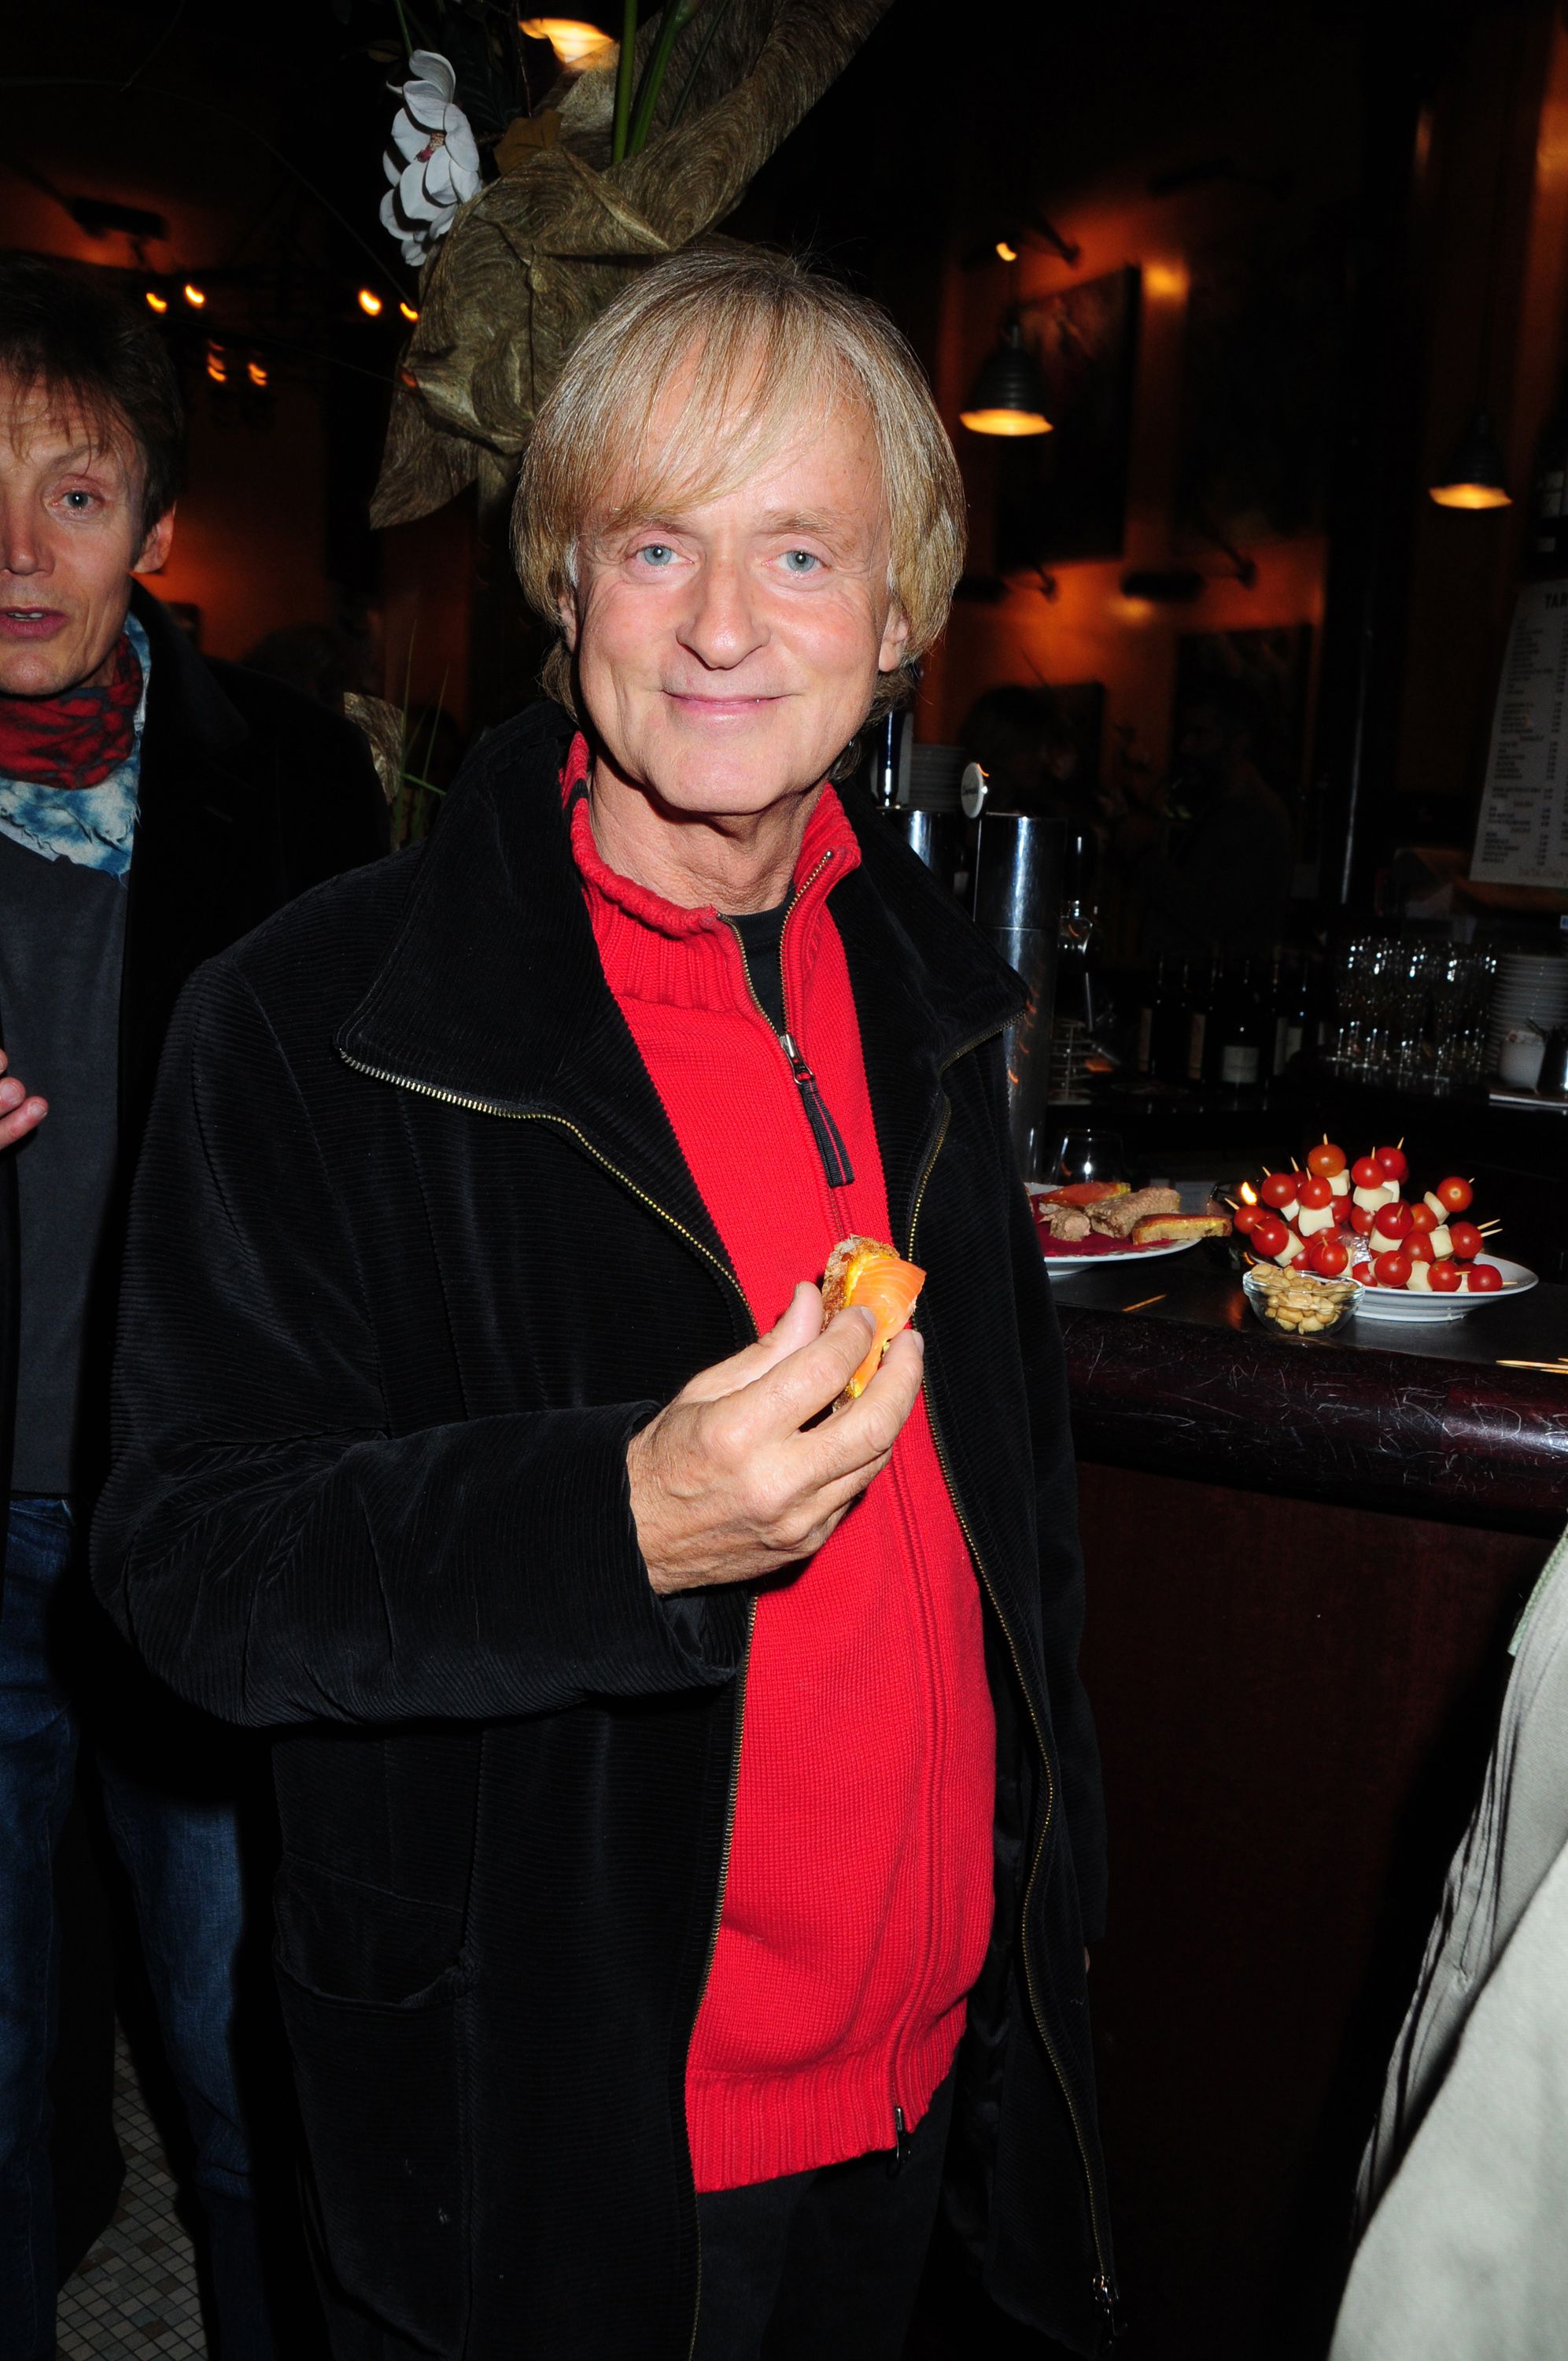 Dave AKA Wouter Otto Levenbach au Bataclan Cafe le 21 octobre 2010 à Paris, France. | Photo : Getty Images